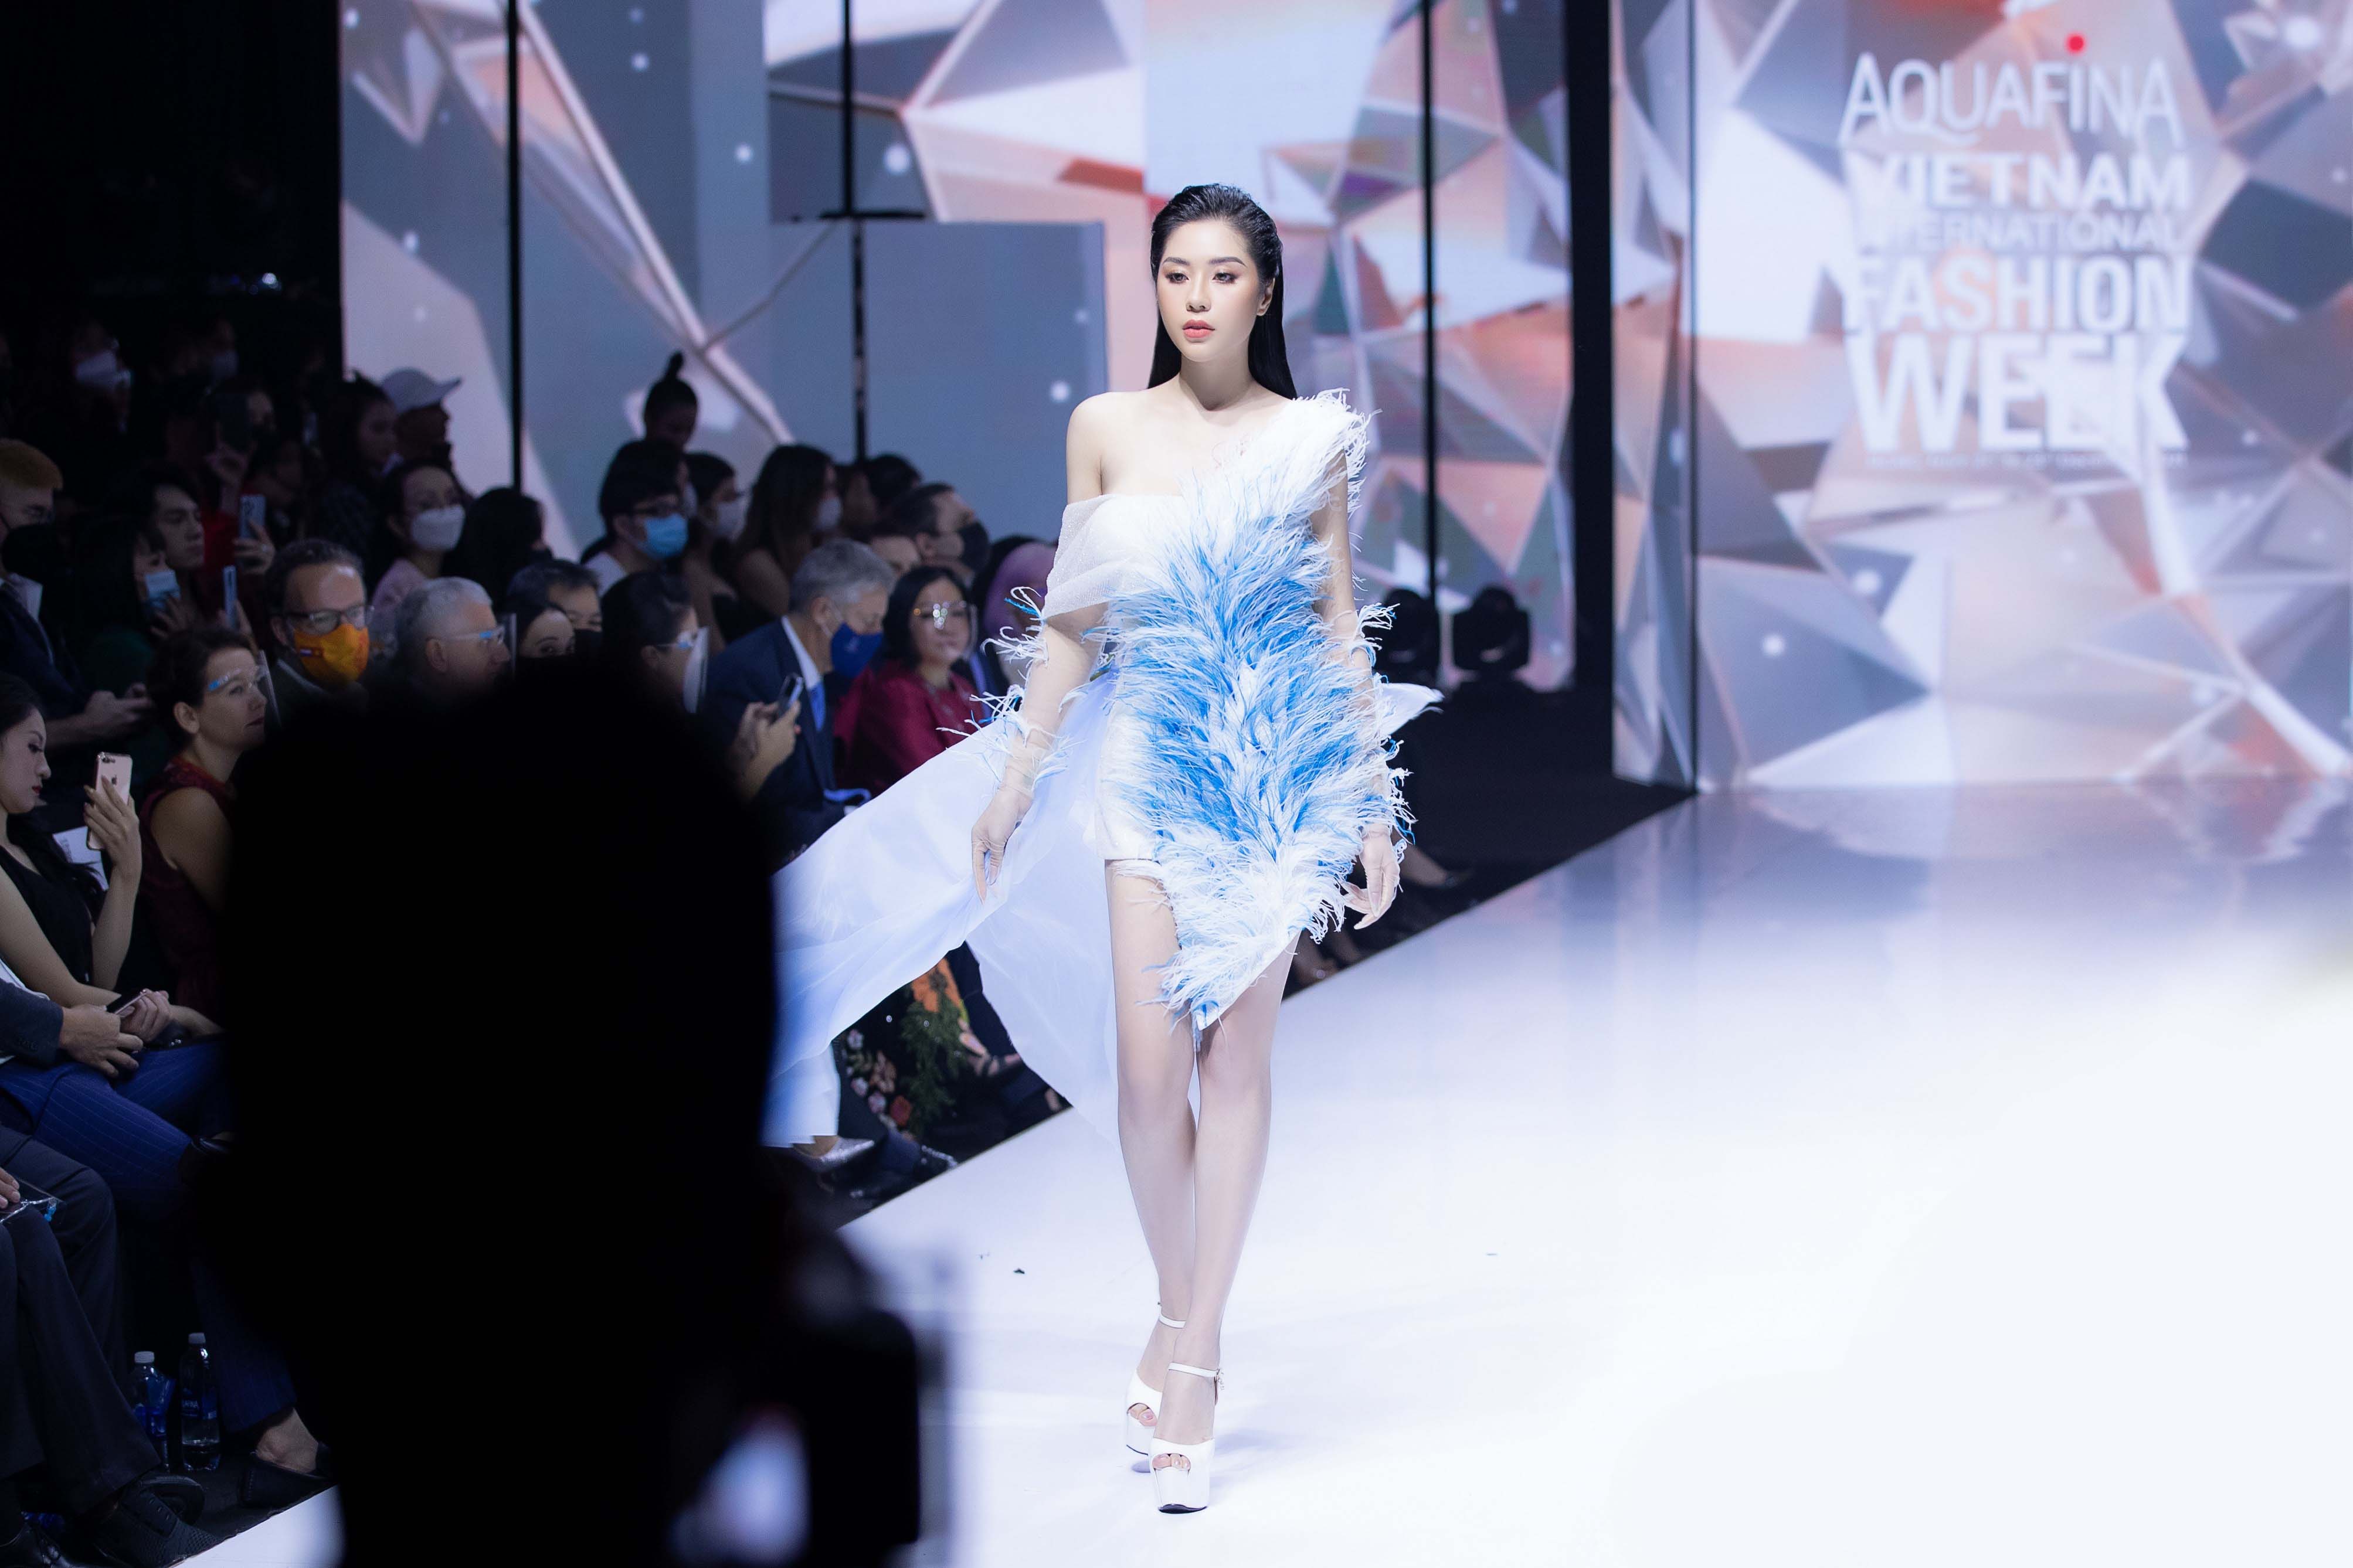 Hoa hậu Tô Diệp Hà sải bước tự tin trong trang phục NTK Ivan Trần dù lần đầu catwalk